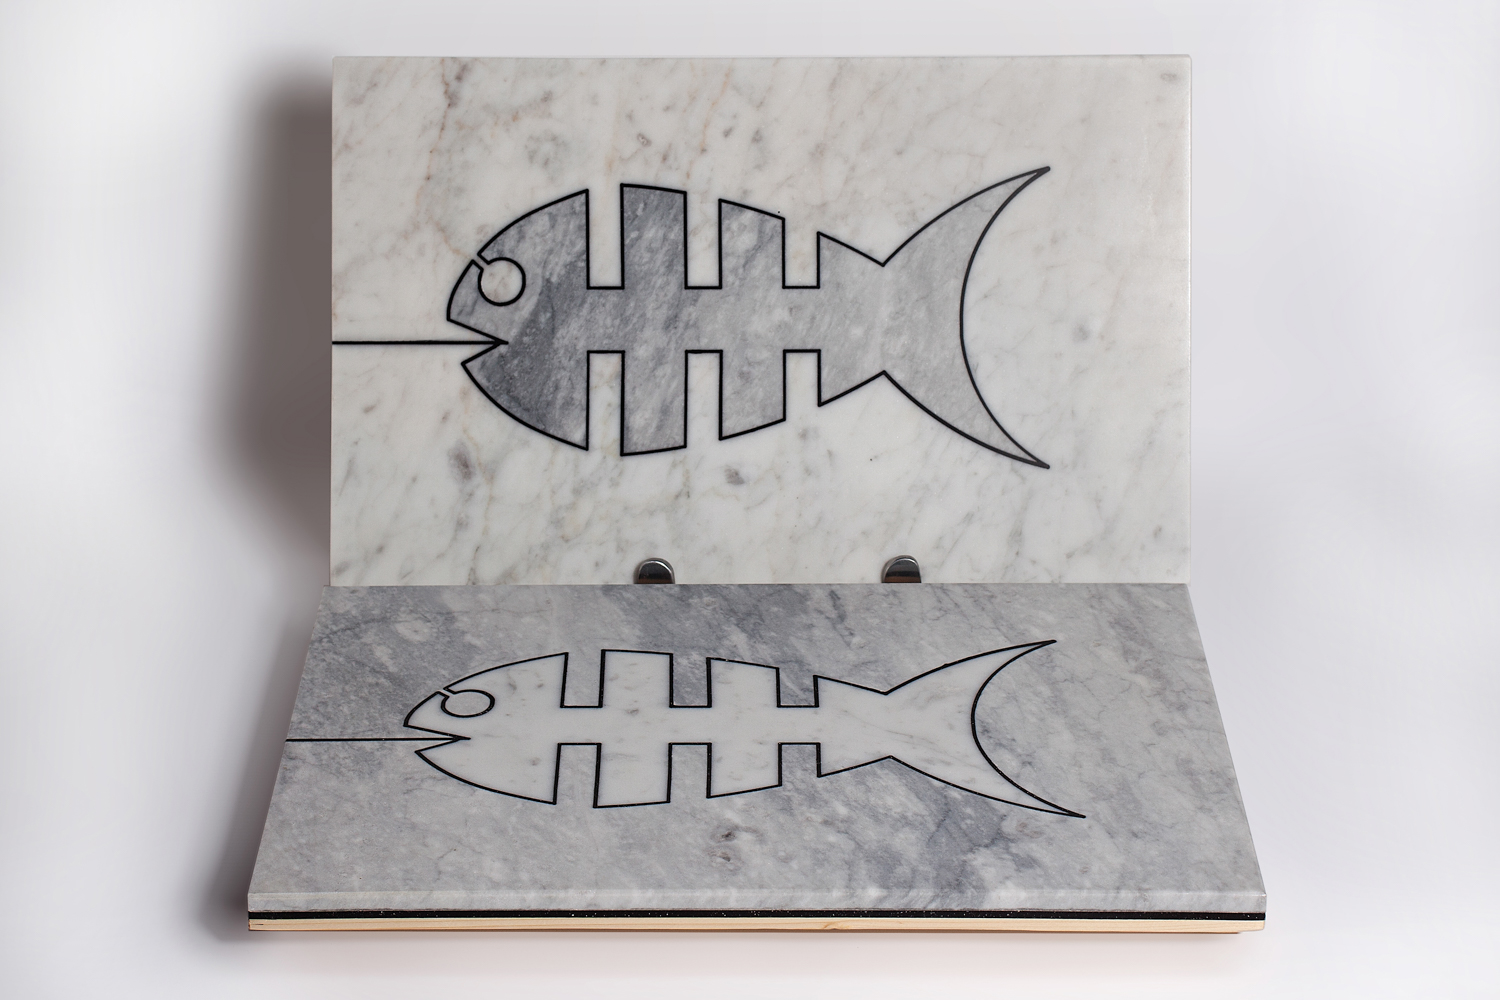 Accessori di design per la cucina, il tagliere vassoio Fish&Chop di Alessandra Taravacci